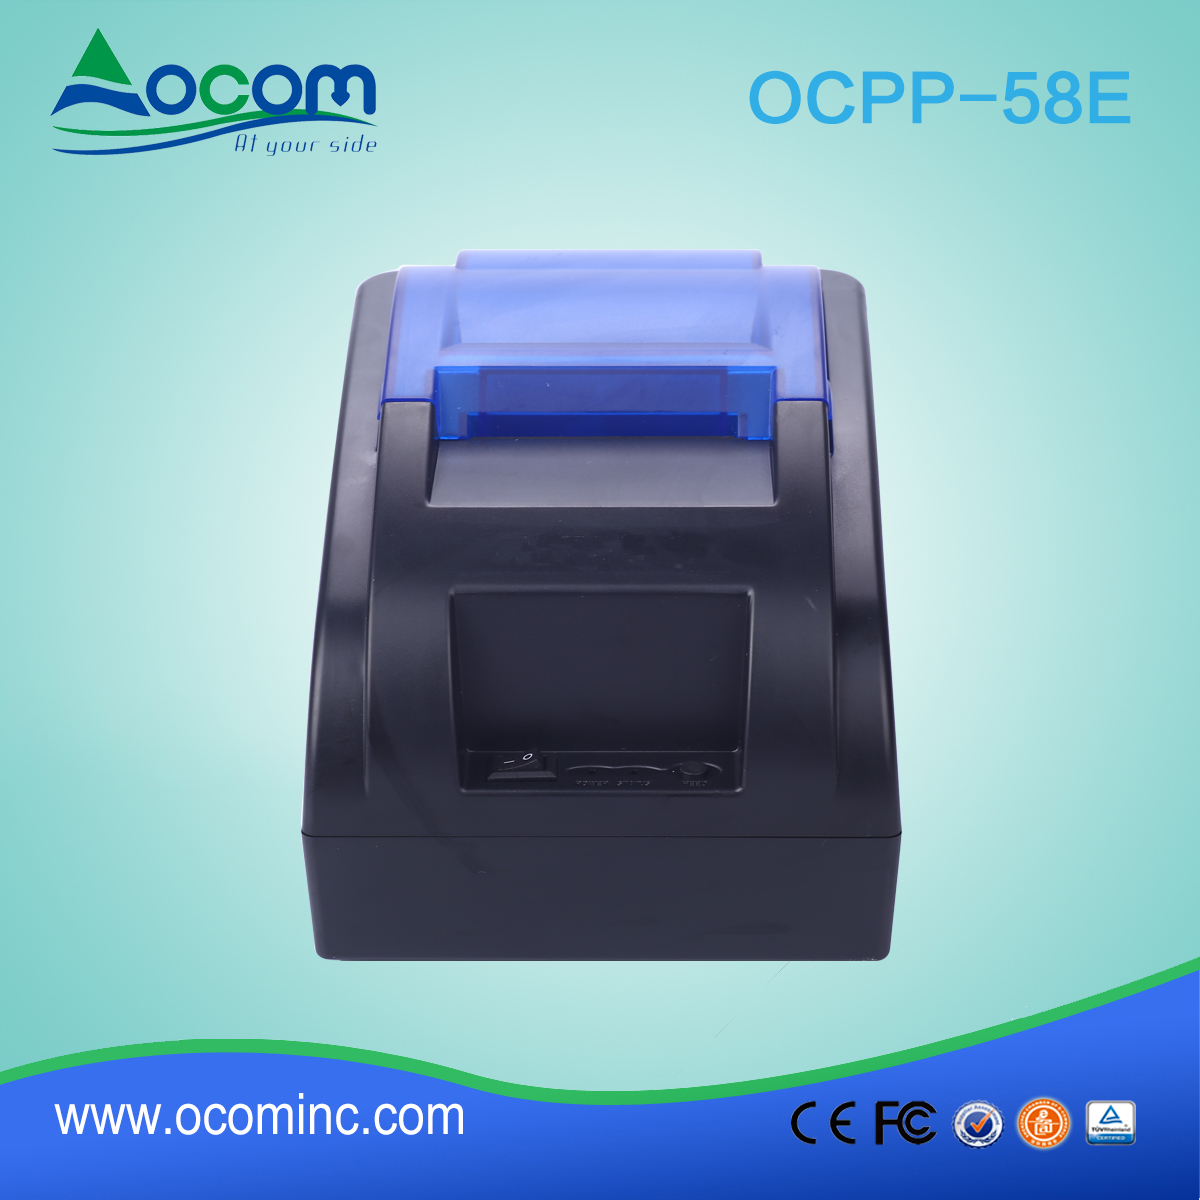 Imprimante de reçus thermiques 58mm OCPP-58E avec adaptateur secteur intégré